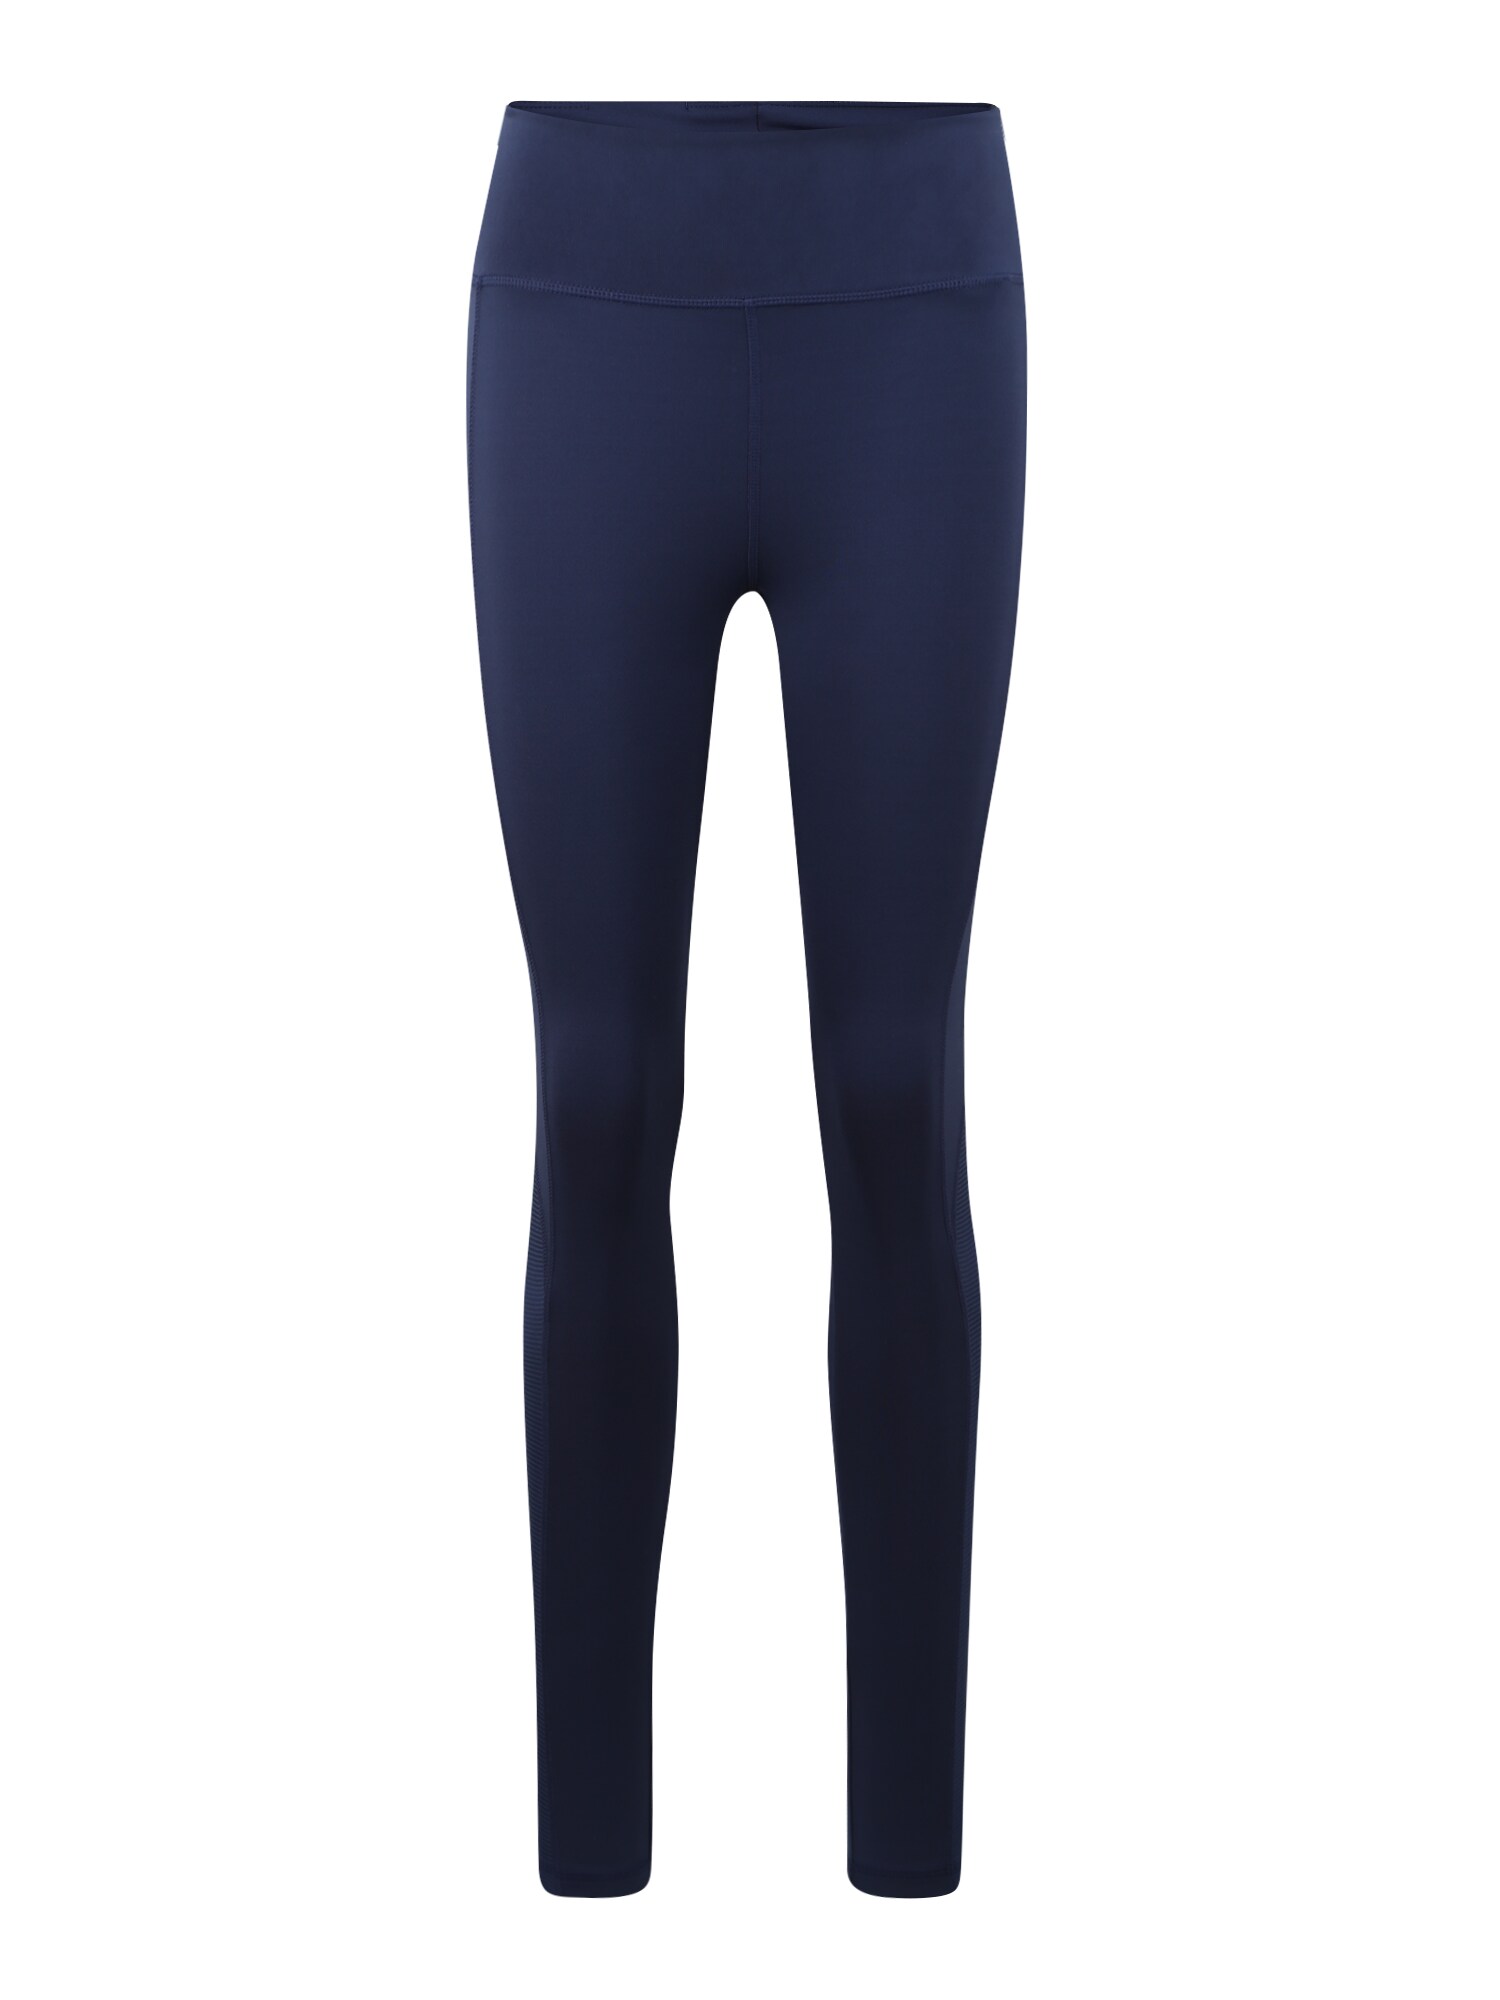 ADIDAS PERFORMANCE Sportinės kelnės 'Karlie Kloss'  tamsiai mėlyna